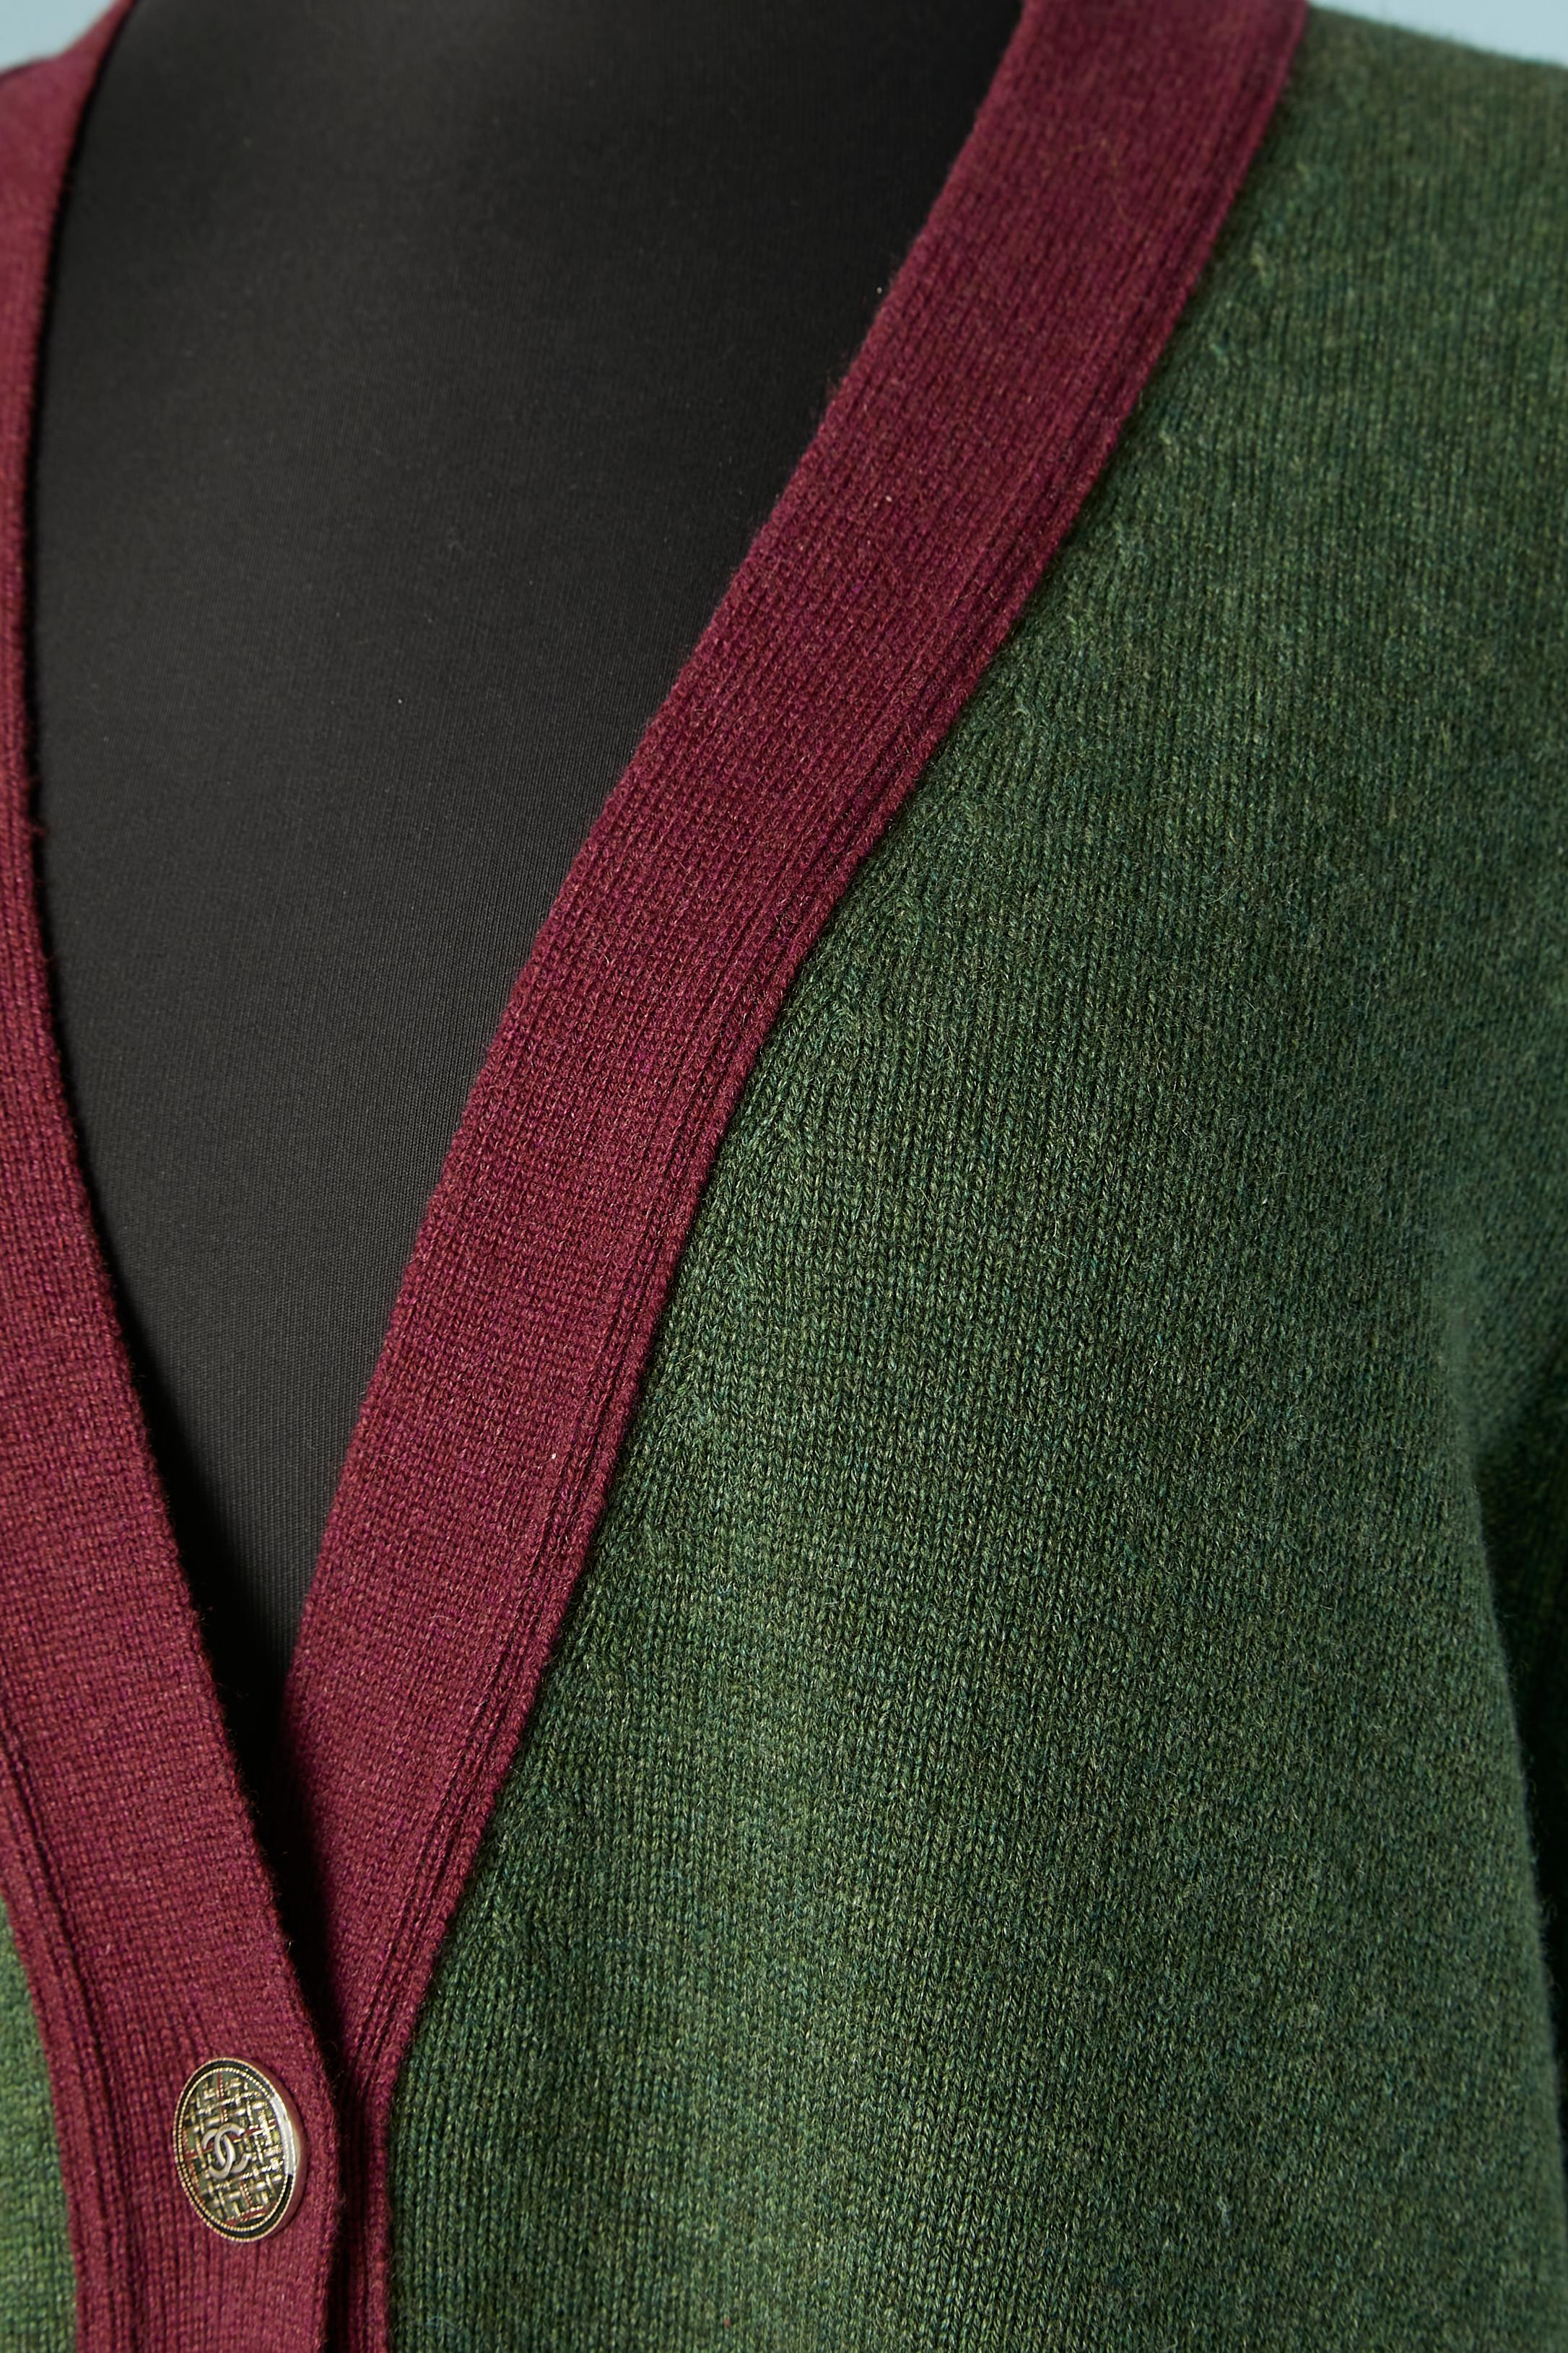 Cardigan en tricot de cachemire kaki avec bord violet et boutons de marque. Pochette sur les deux côtés. 
TAILLE 48 (fR) XL 